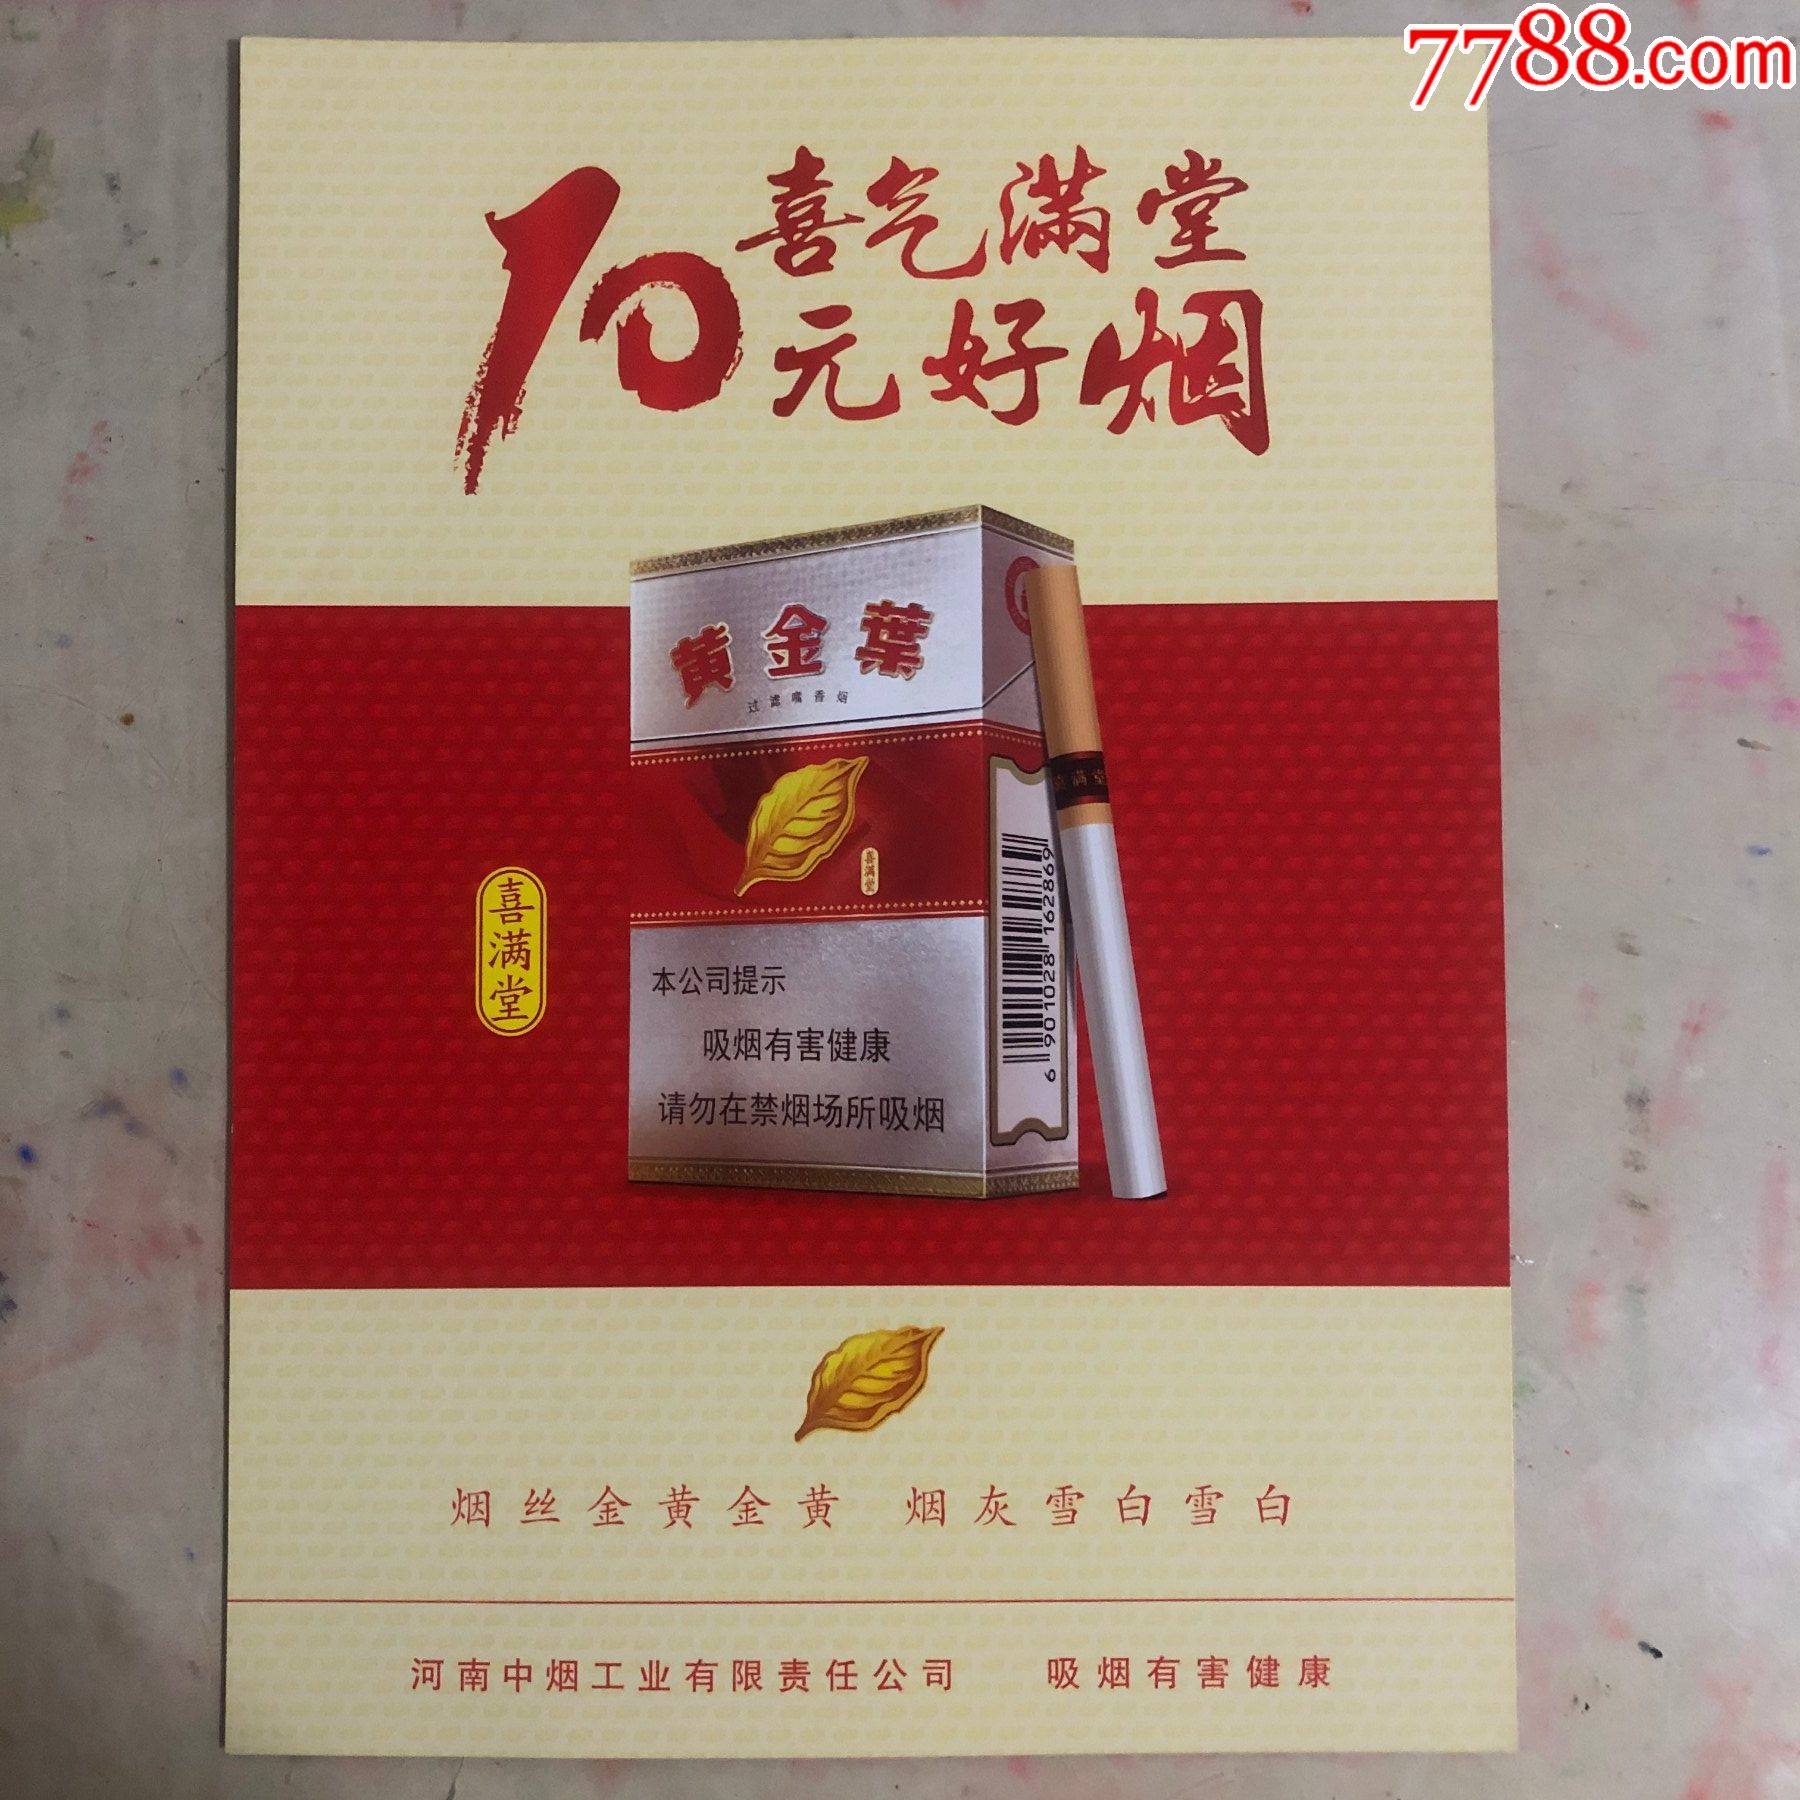 黄金叶喜满堂烟盒烟标图片